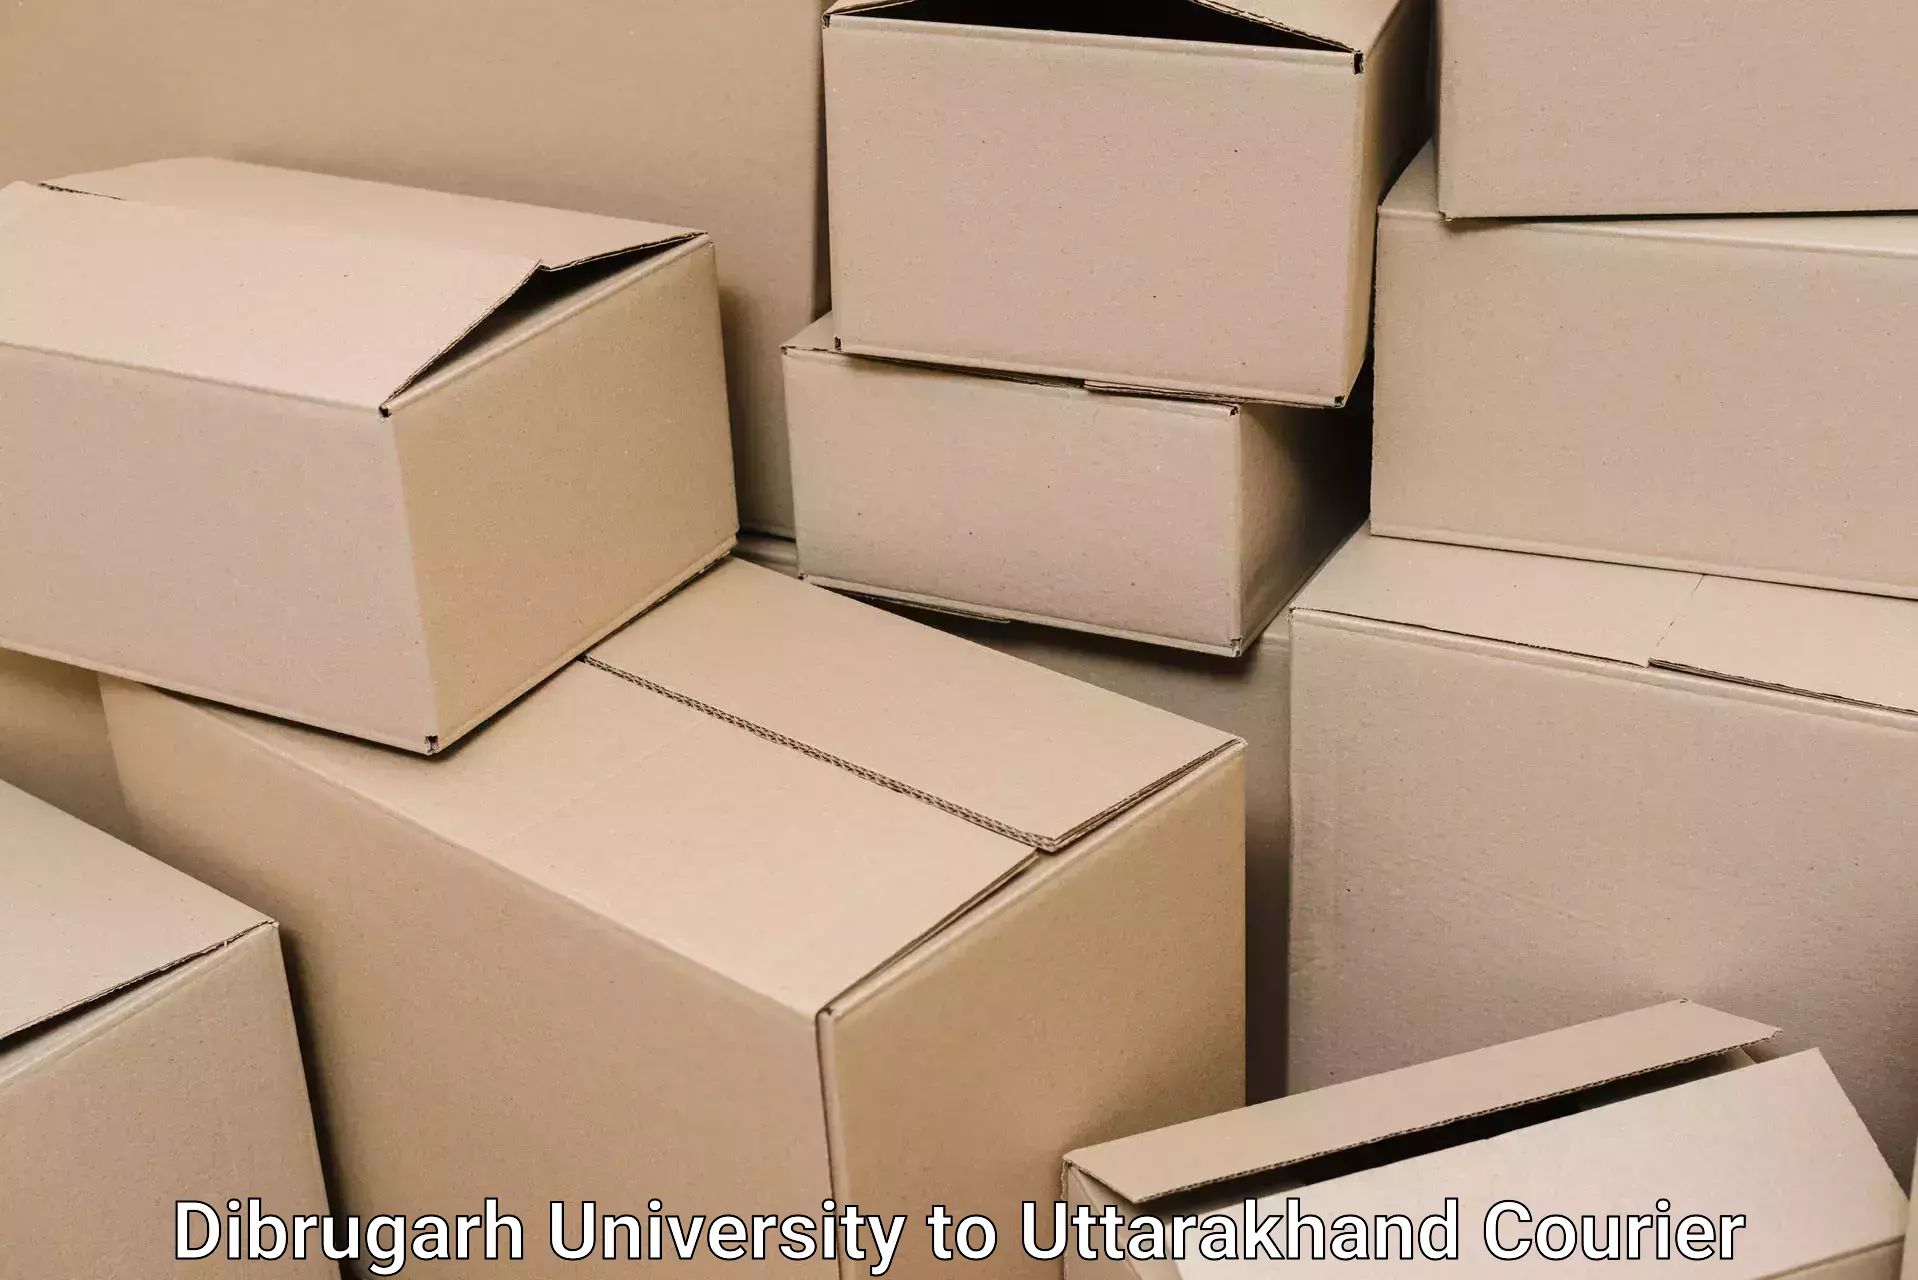 Furniture transport solutions Dibrugarh University to Baijnath Bageshwar